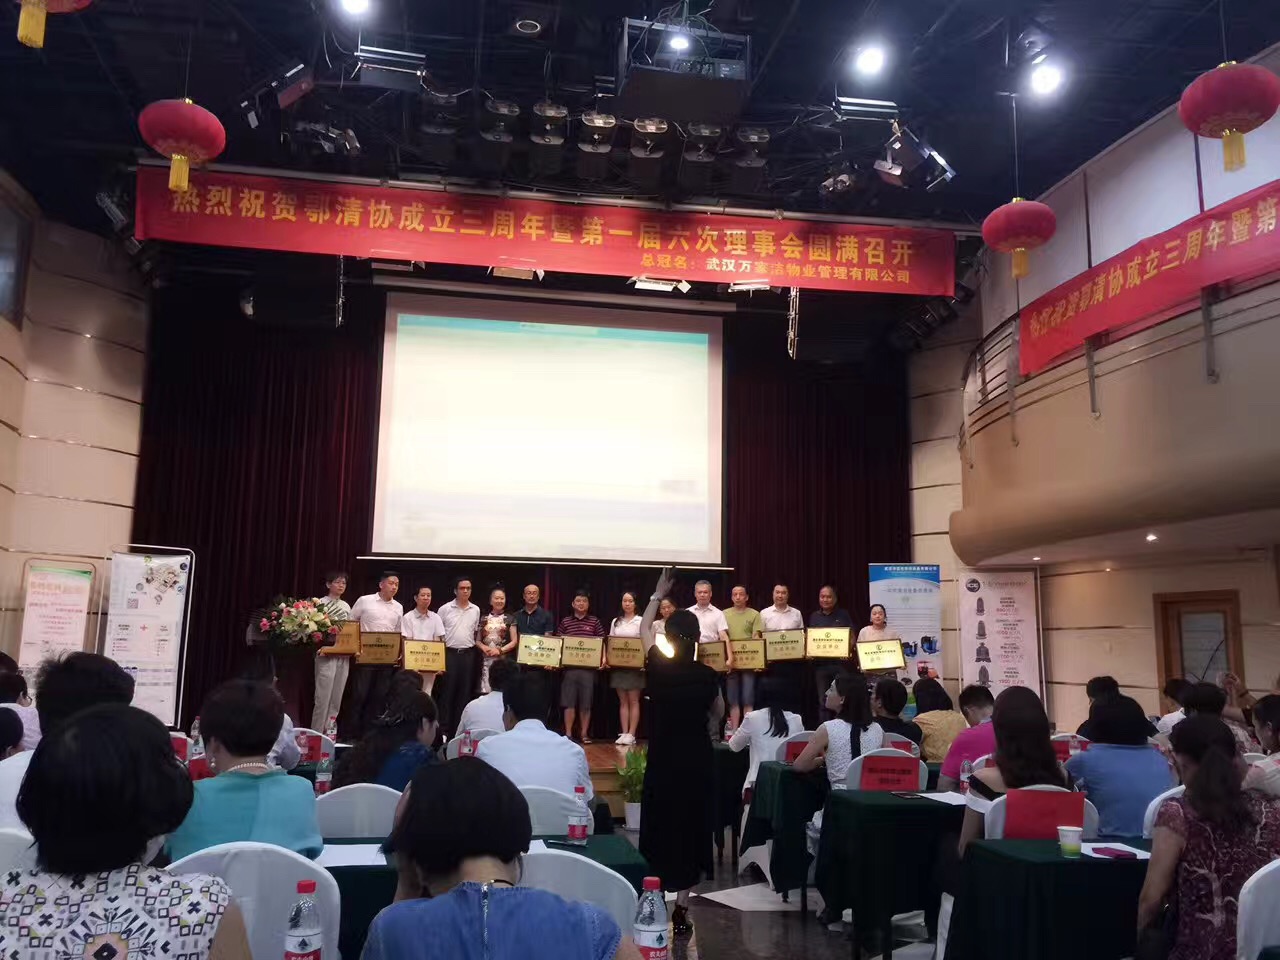 热烈祝贺湖北省清洗保洁行业协会三周年庆典第一届六次理事会圆满成功